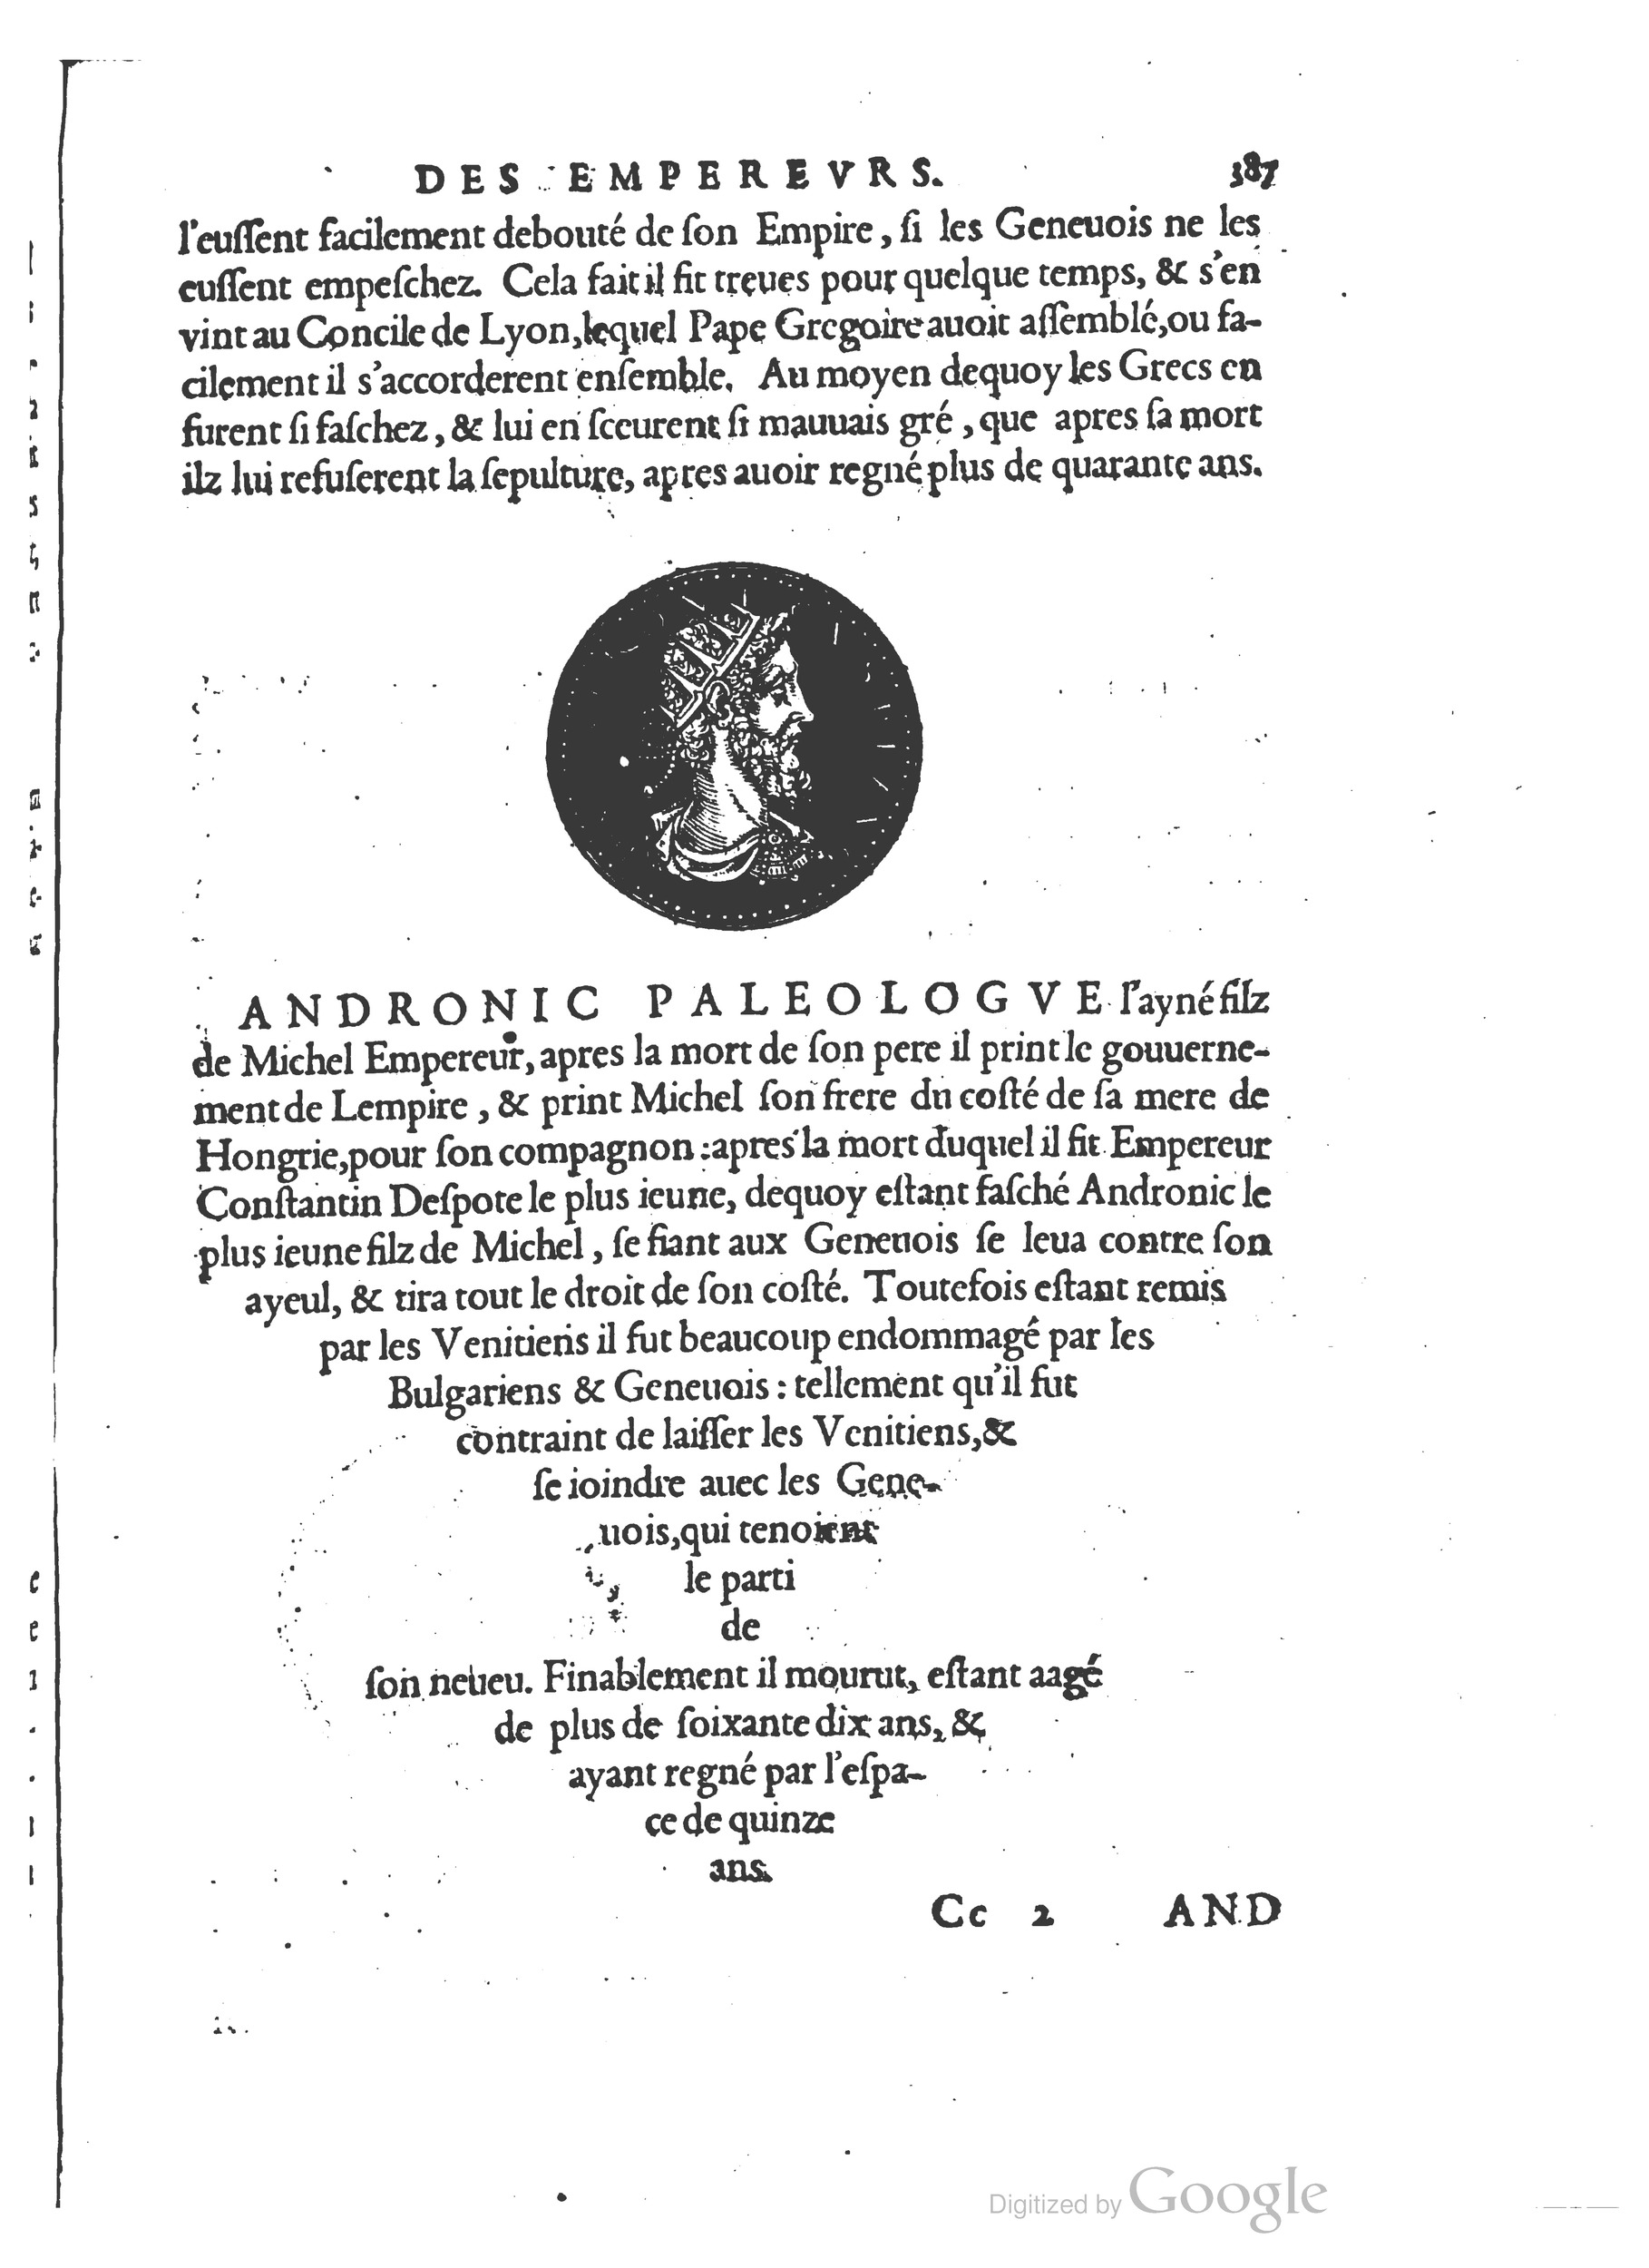 1553 Epitome du trésor des antiquités Strada Guérin_BM Lyon_Page_420.jpg